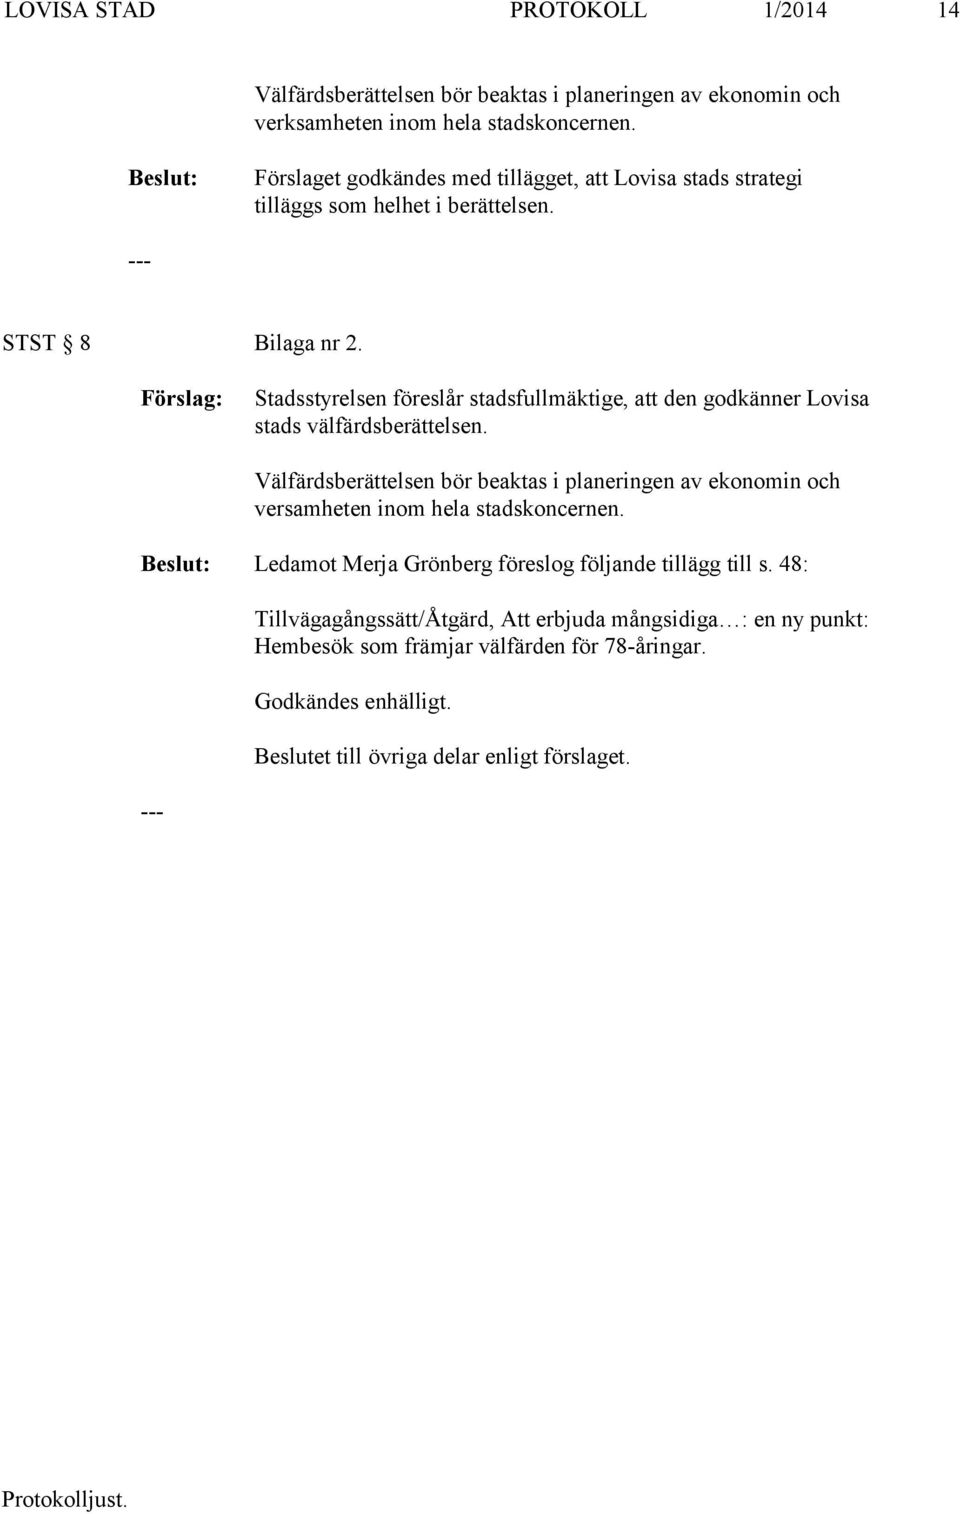 Stadsstyrelsen föreslår stadsfullmäktige, att den godkänner Lovisa stads välfärdsberättelsen.